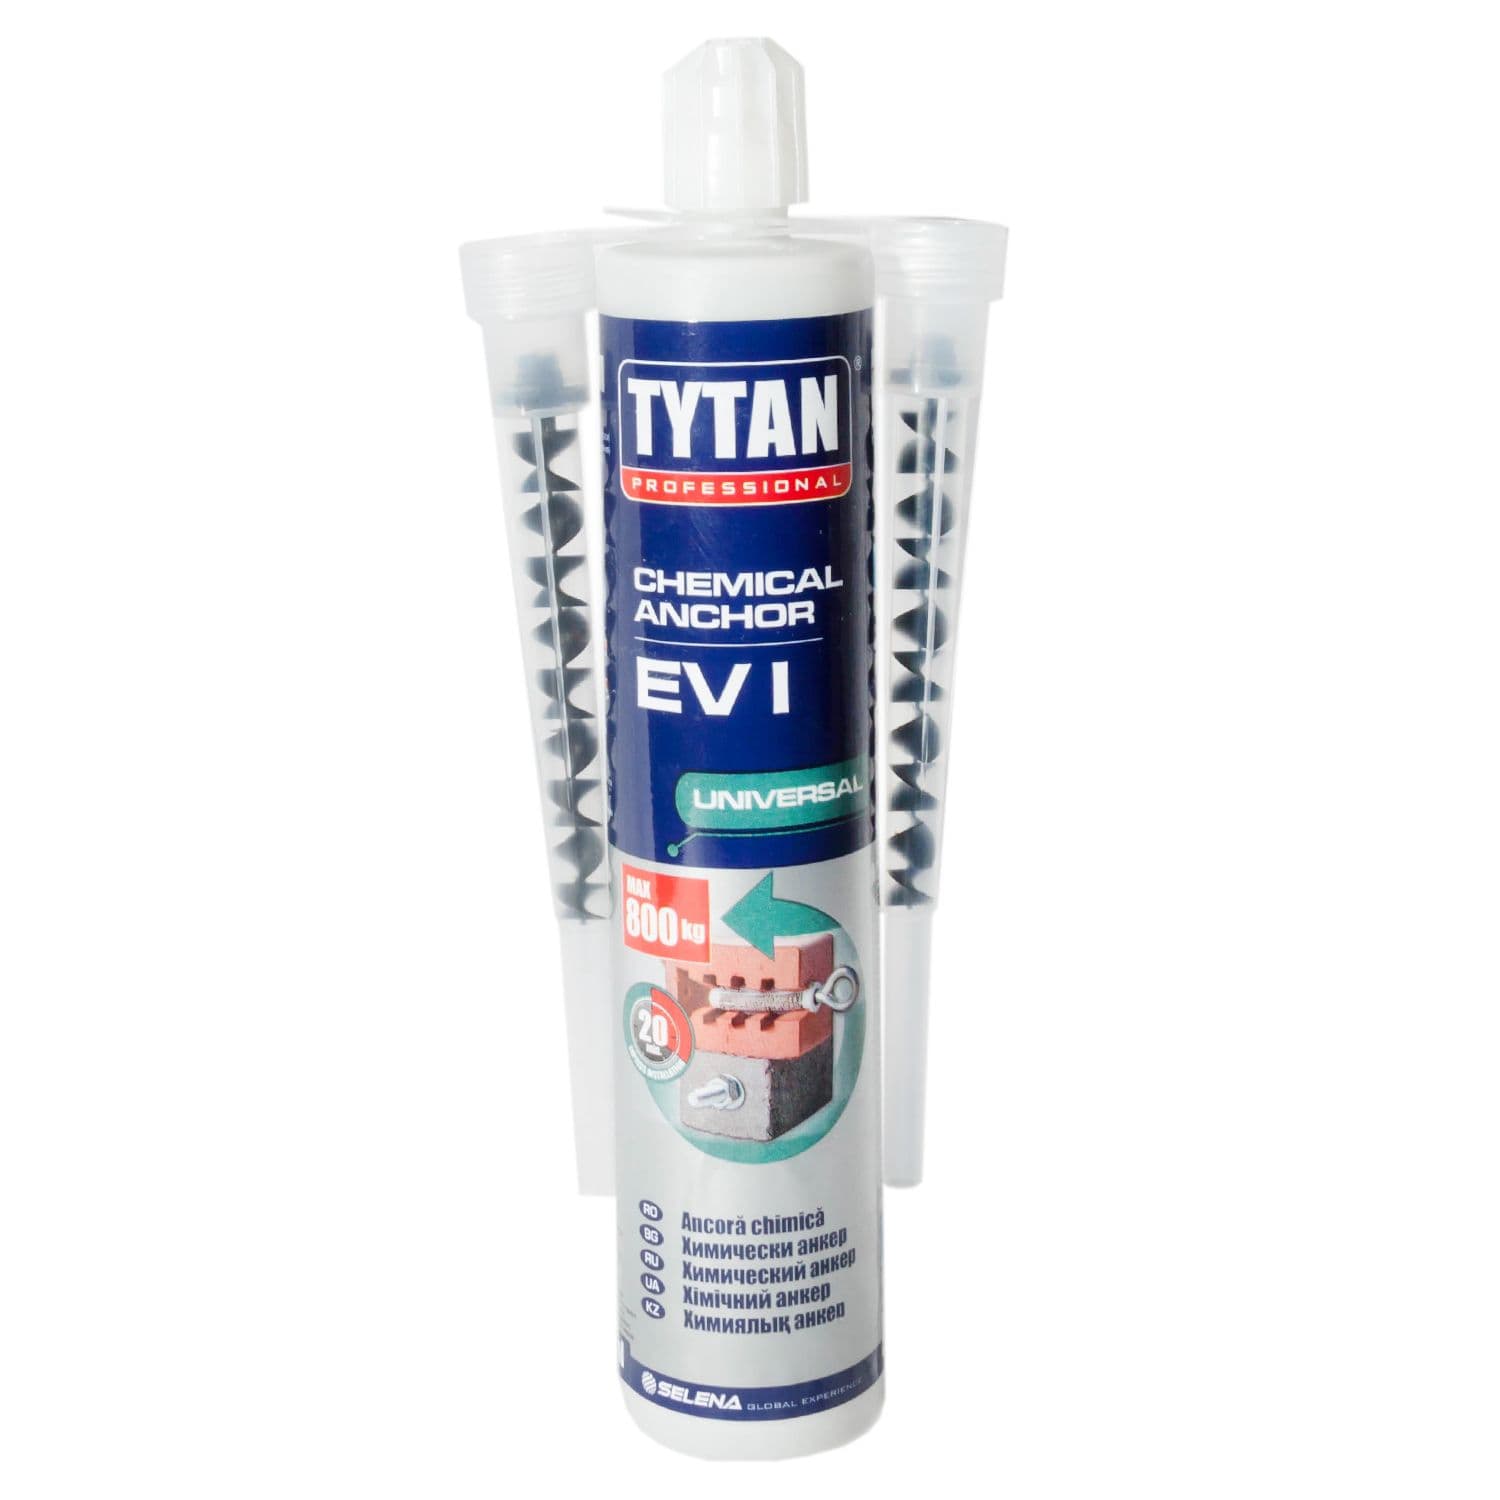 Анкер химический Tytan Professional EV-I Универсальный оптом и в розницу на сайте Сталь Крепеж